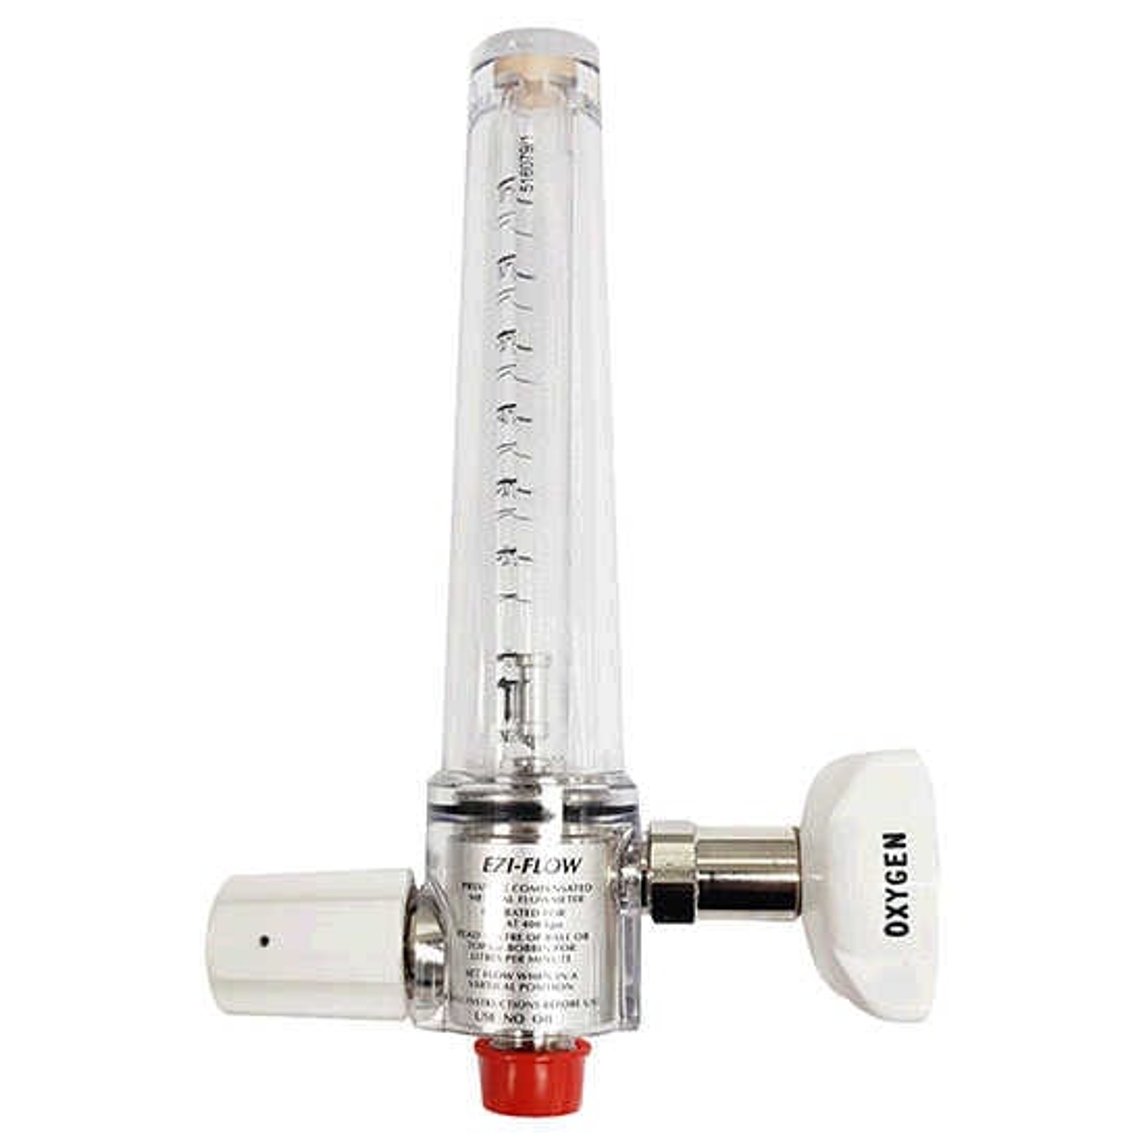 Comweld Oxygen Eziflow Flowmeter 10-60 LPM - Medsales